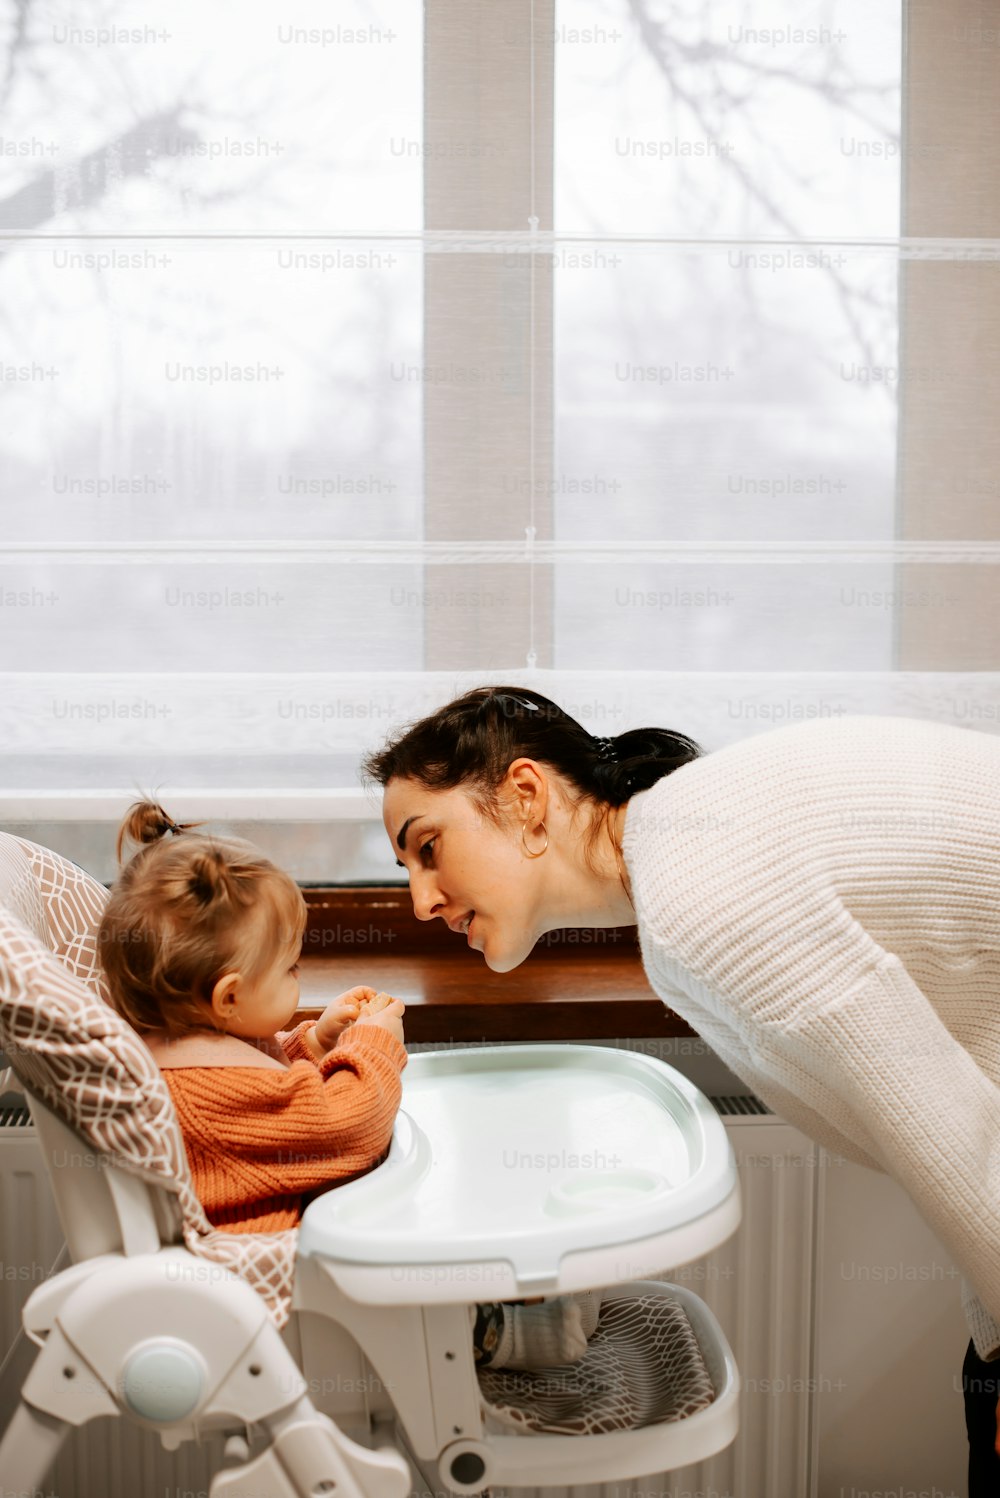 Una donna e un bambino in una vasca da bagno